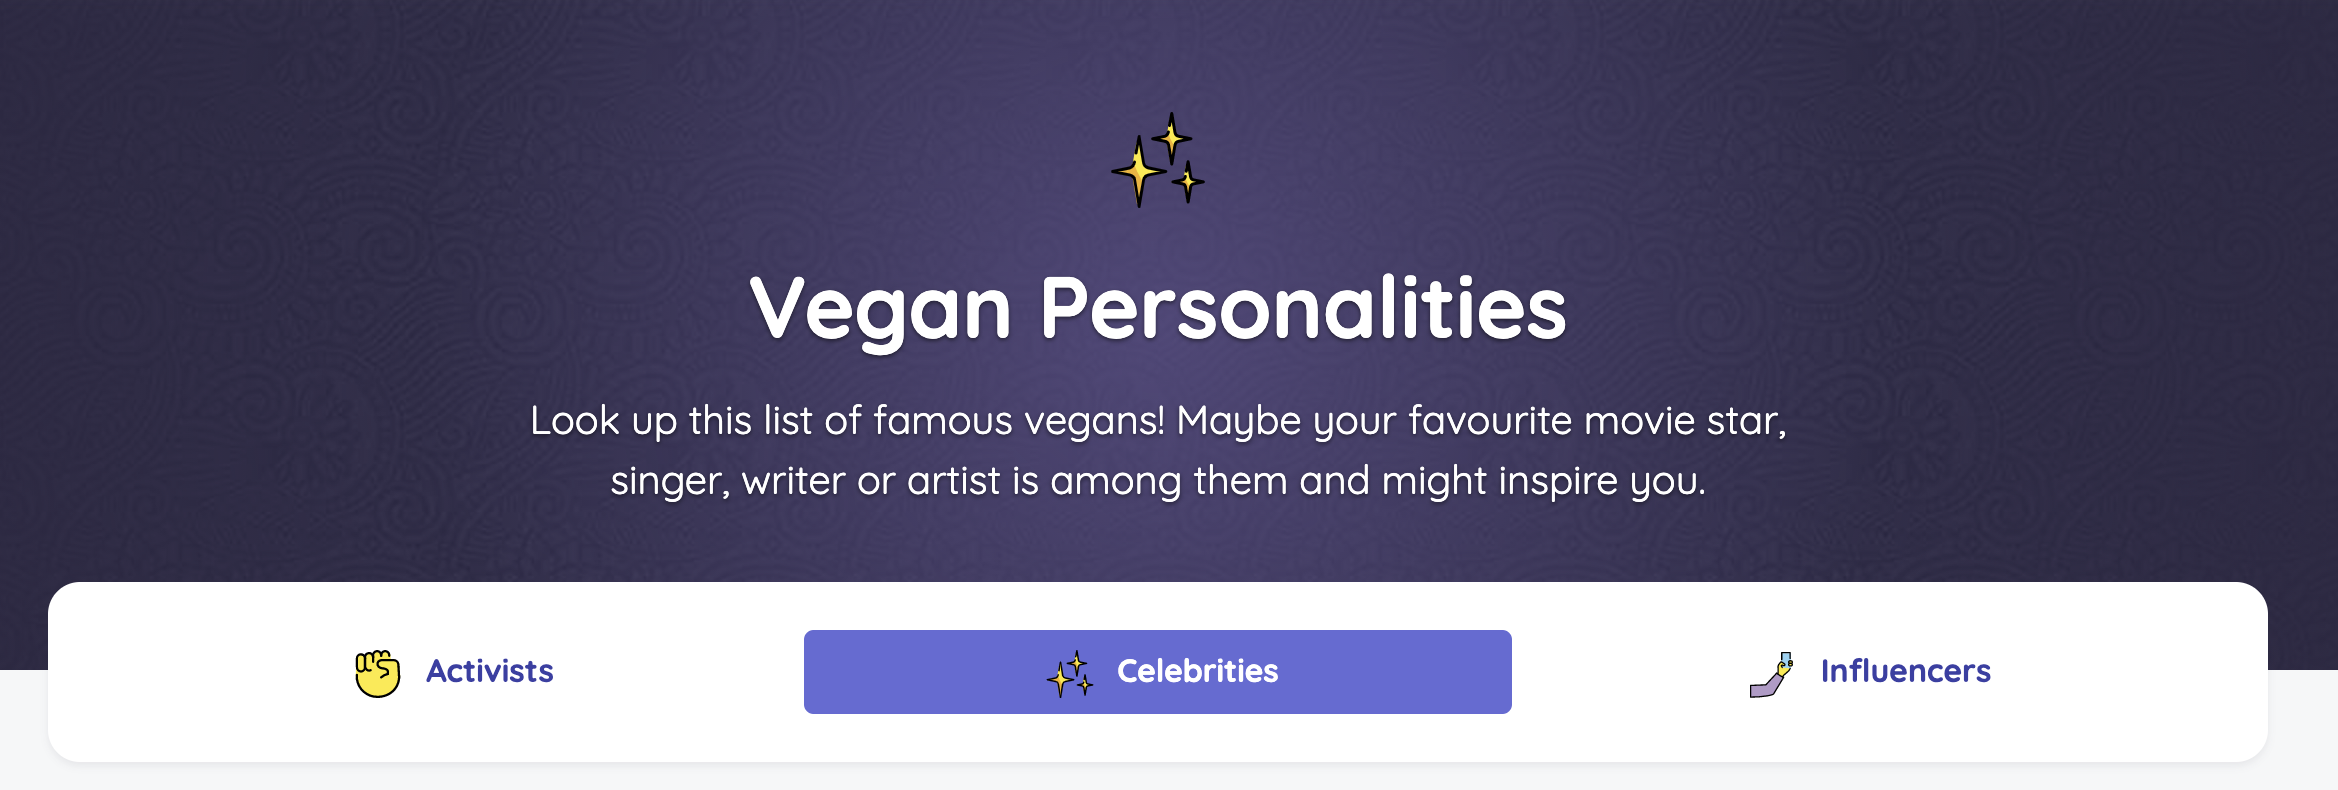 Vegan personalities